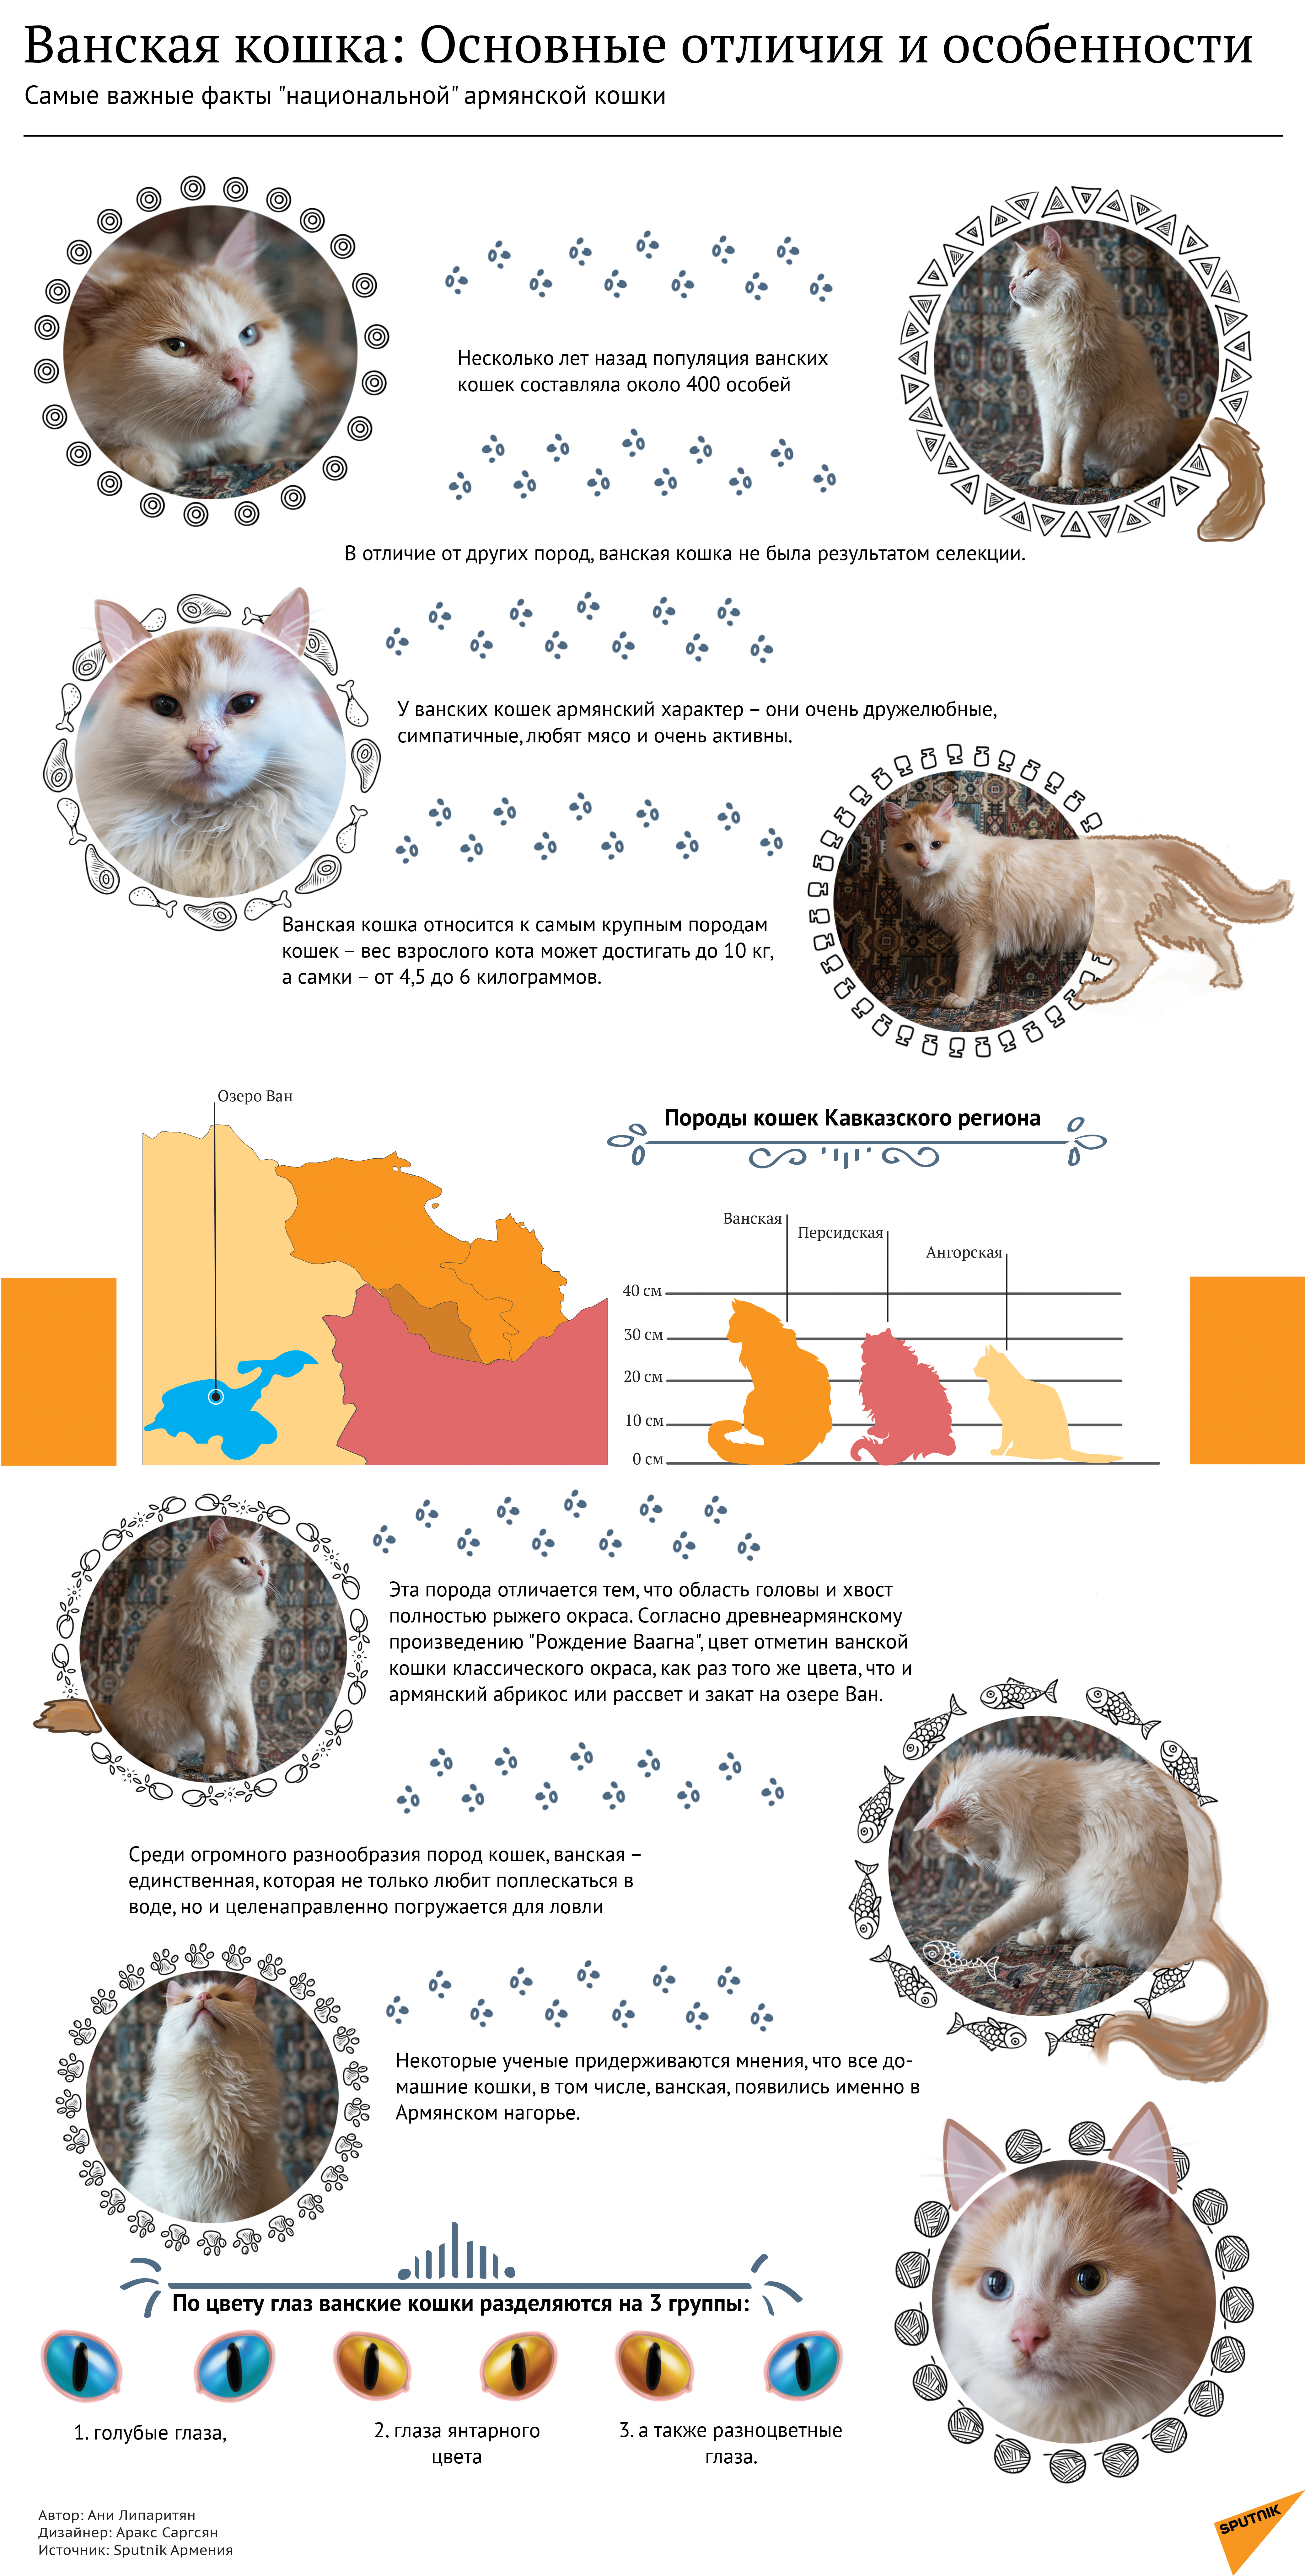 Ванская кошка: основные отличия и особенности - Sputnik Армения